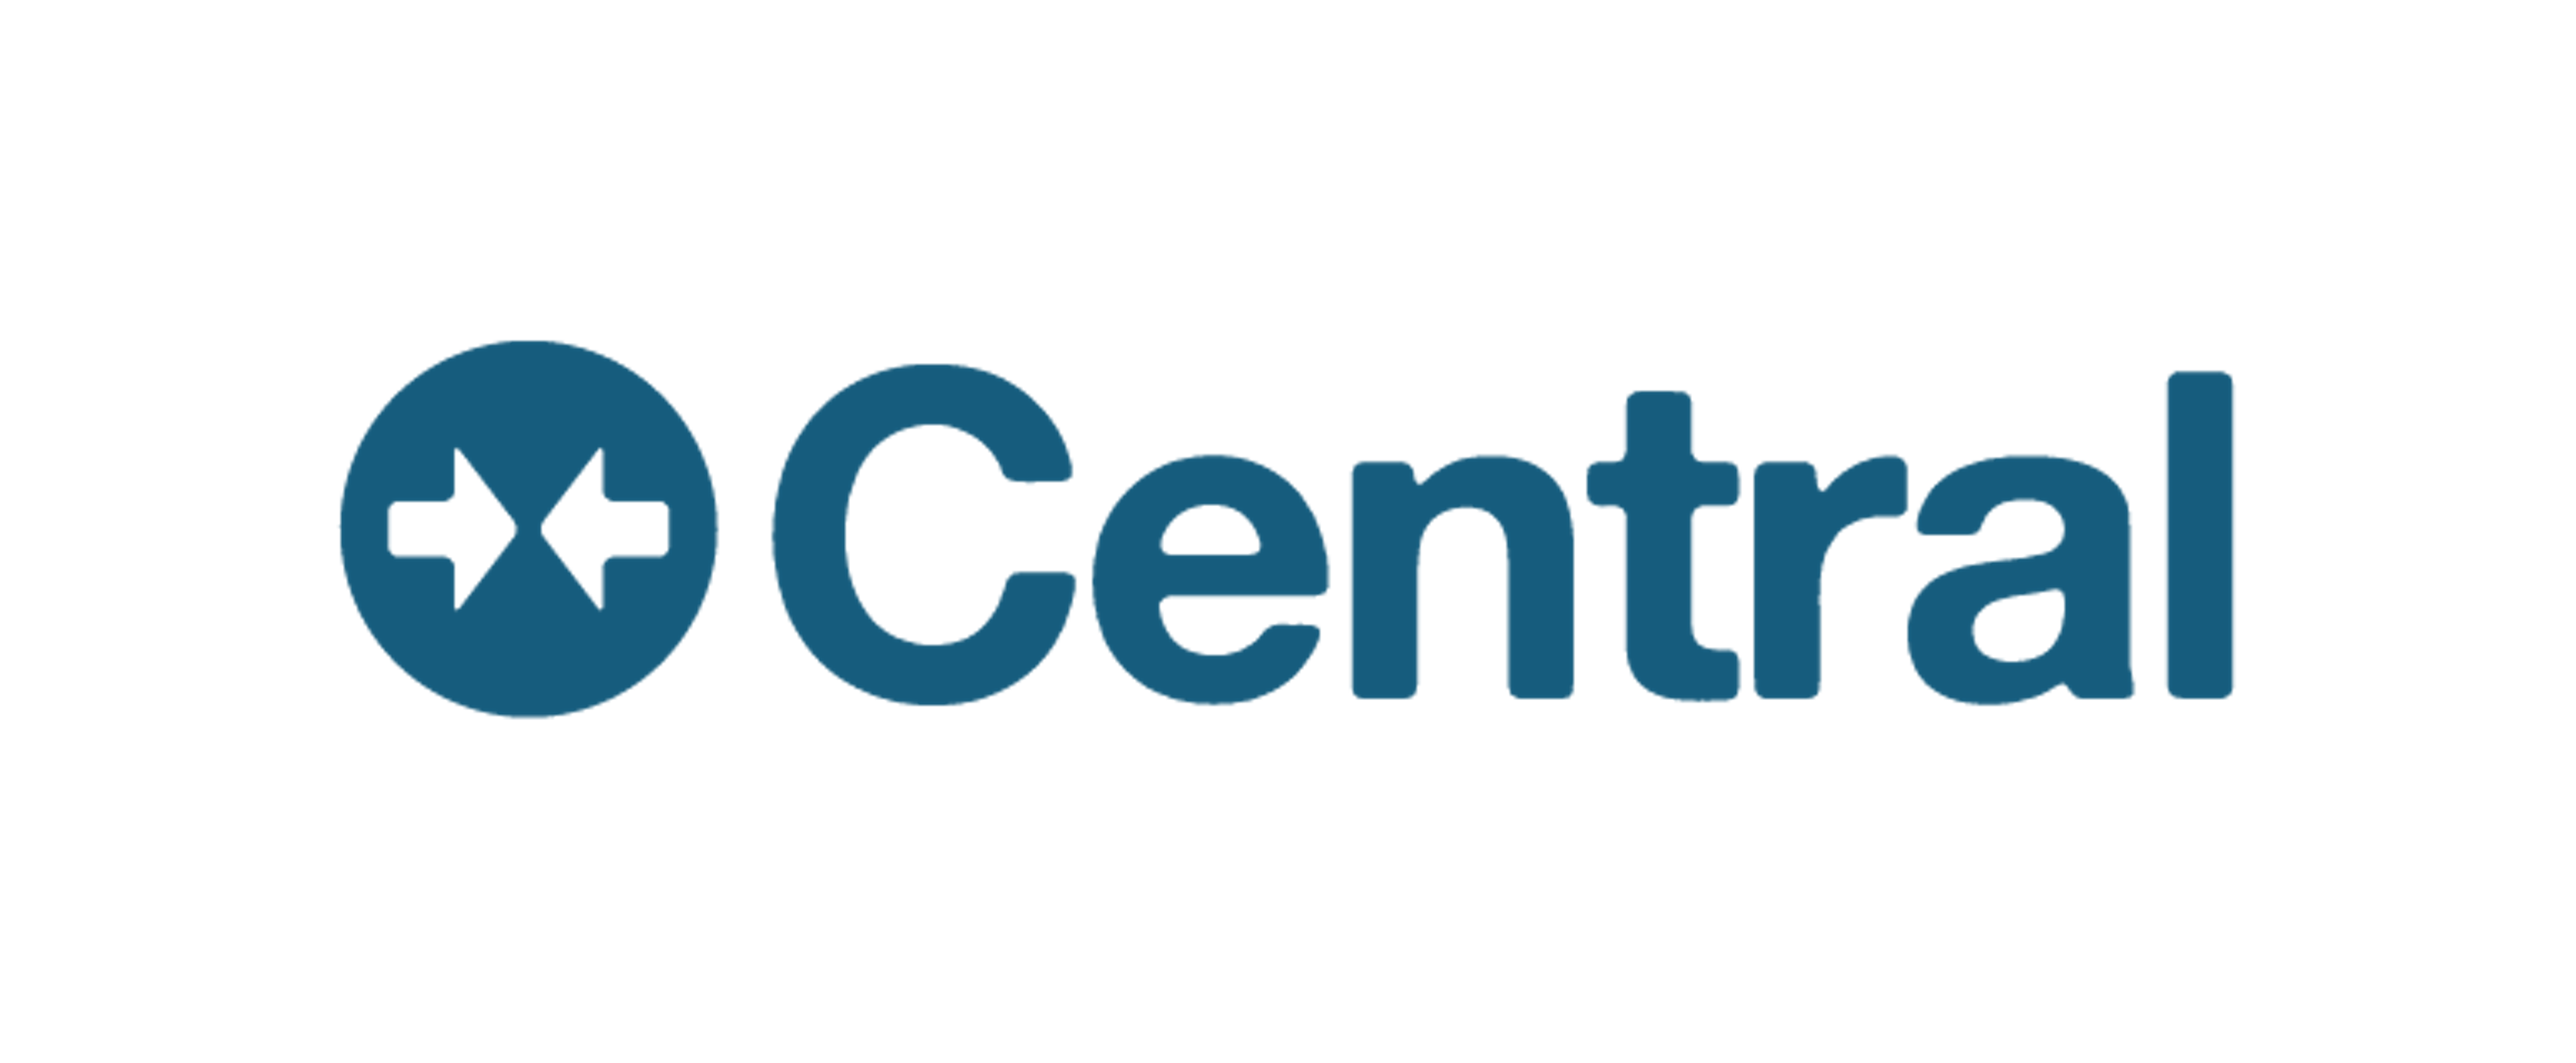 LogMeIn Central Logo